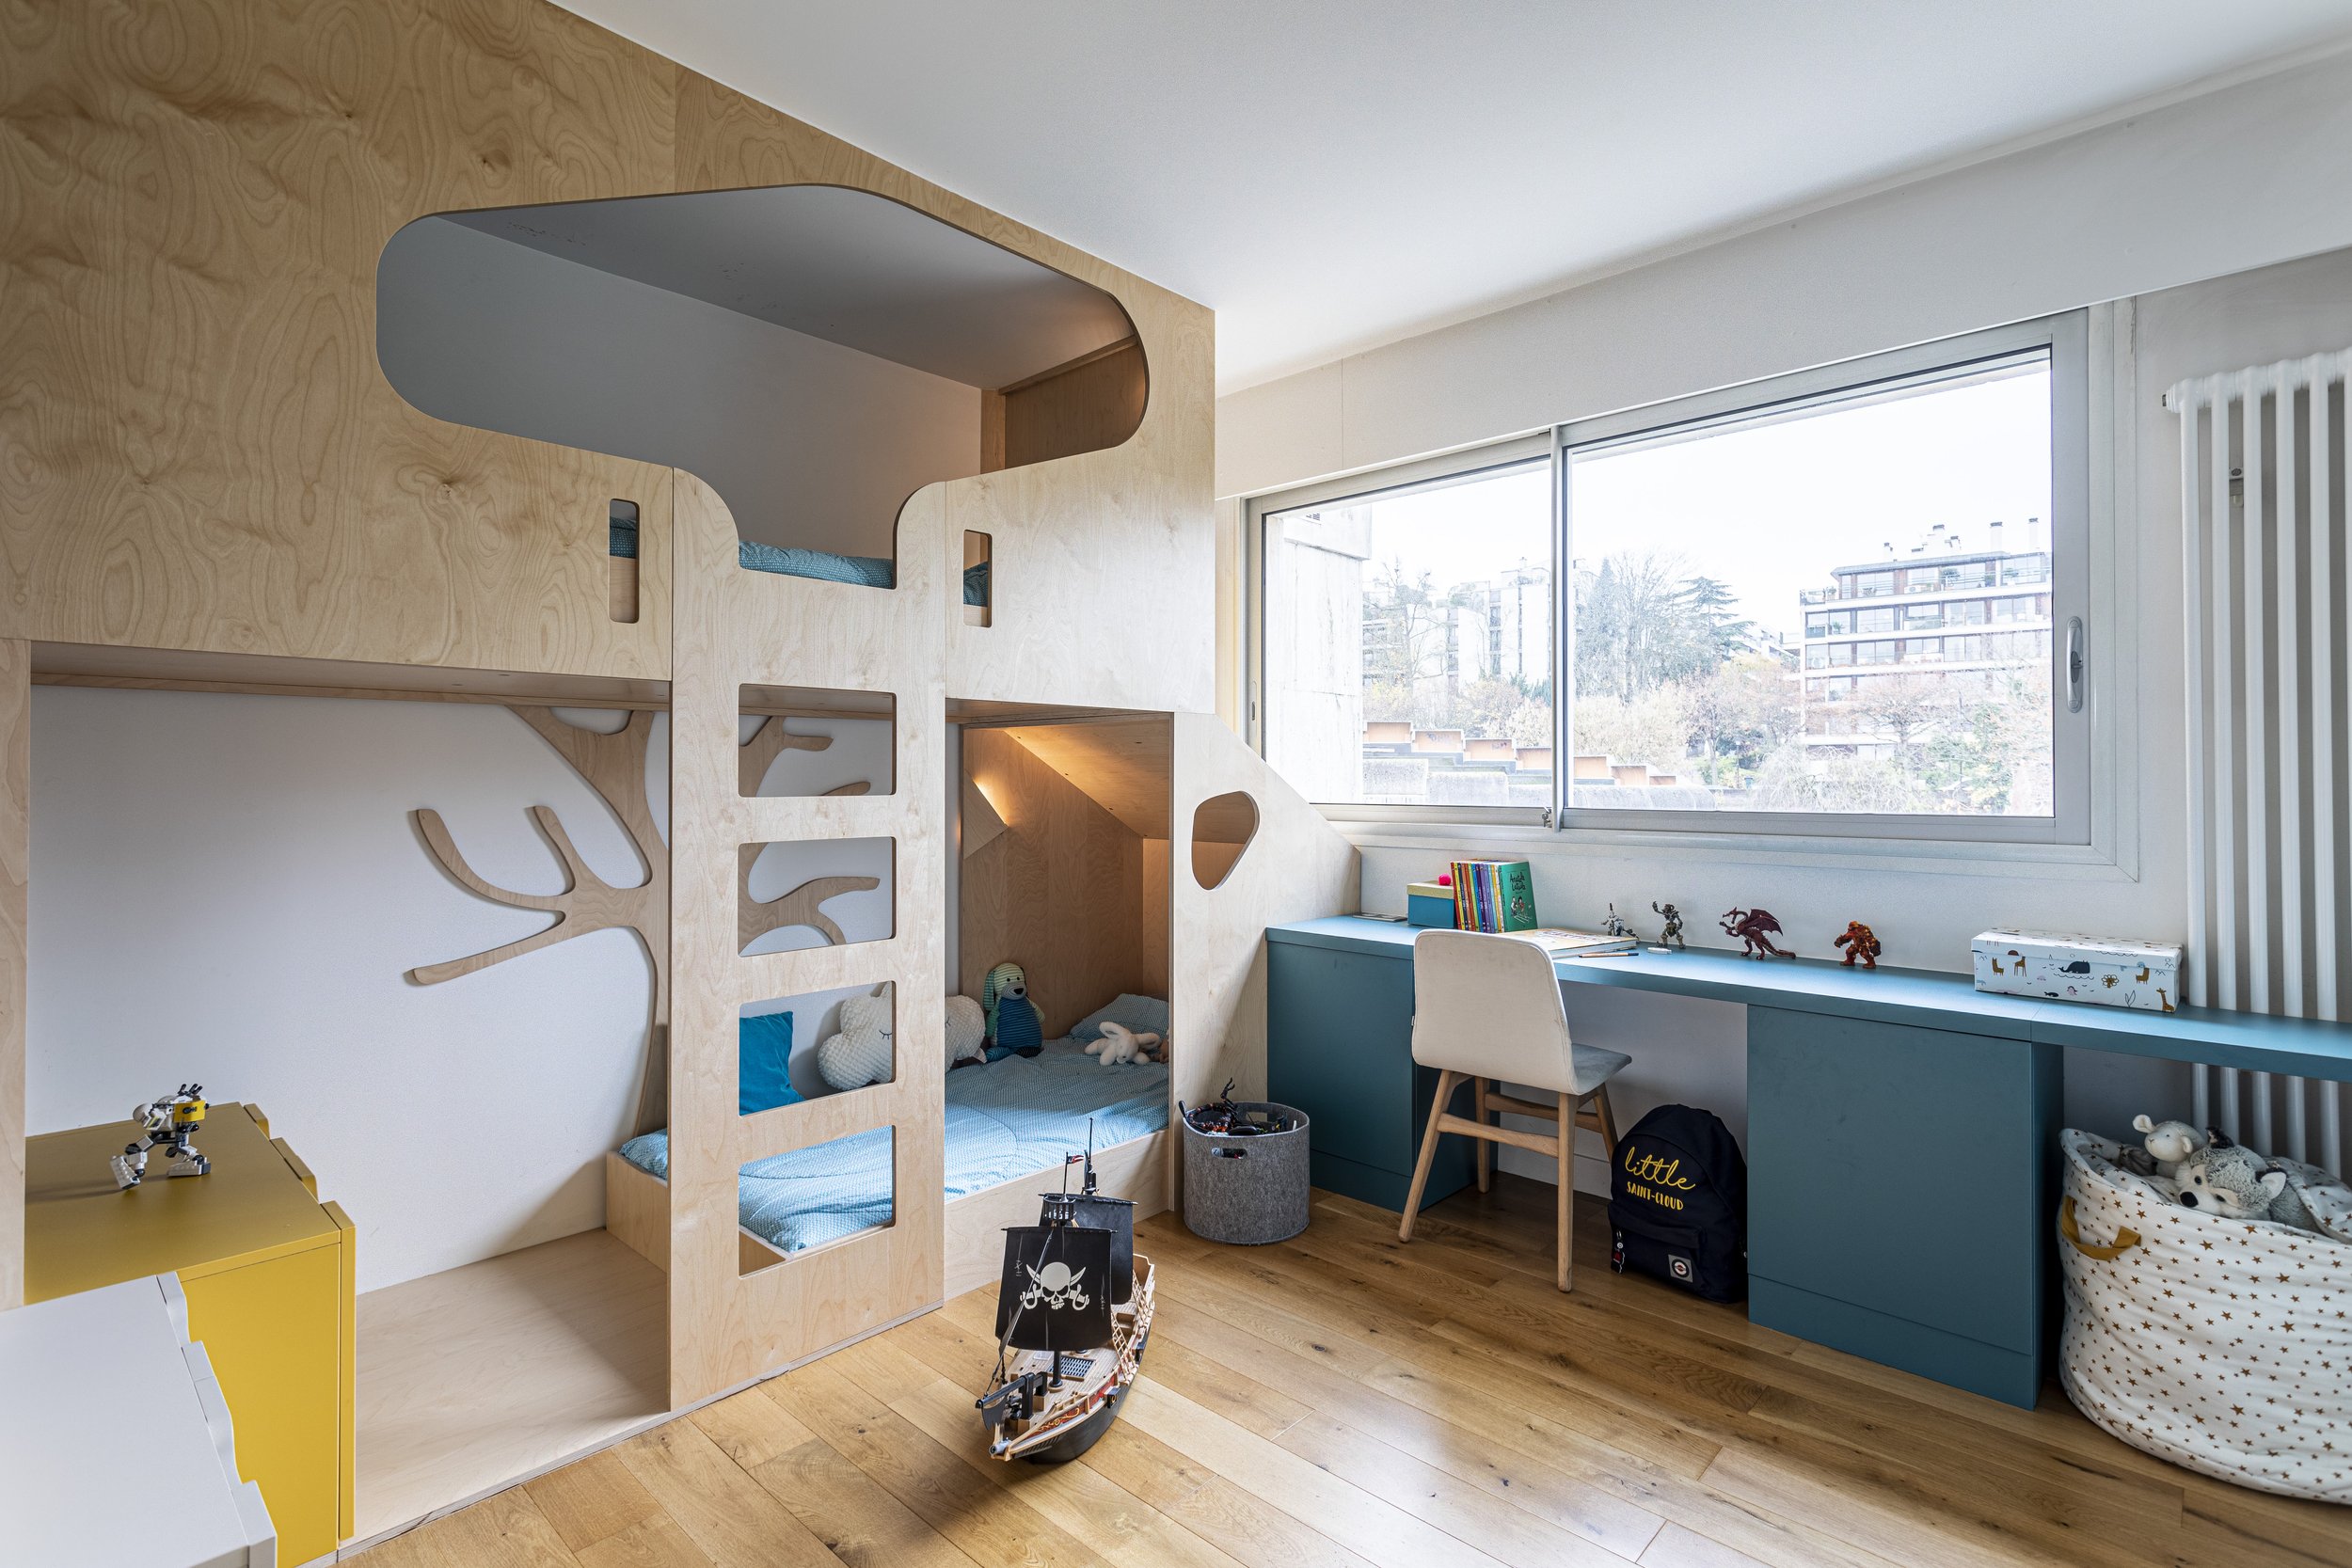 Chambre d'enfants lits cabanes superposés, mobilier sur mesure, architecte  d'intérieur Paris — Bulles & Taille-crayon